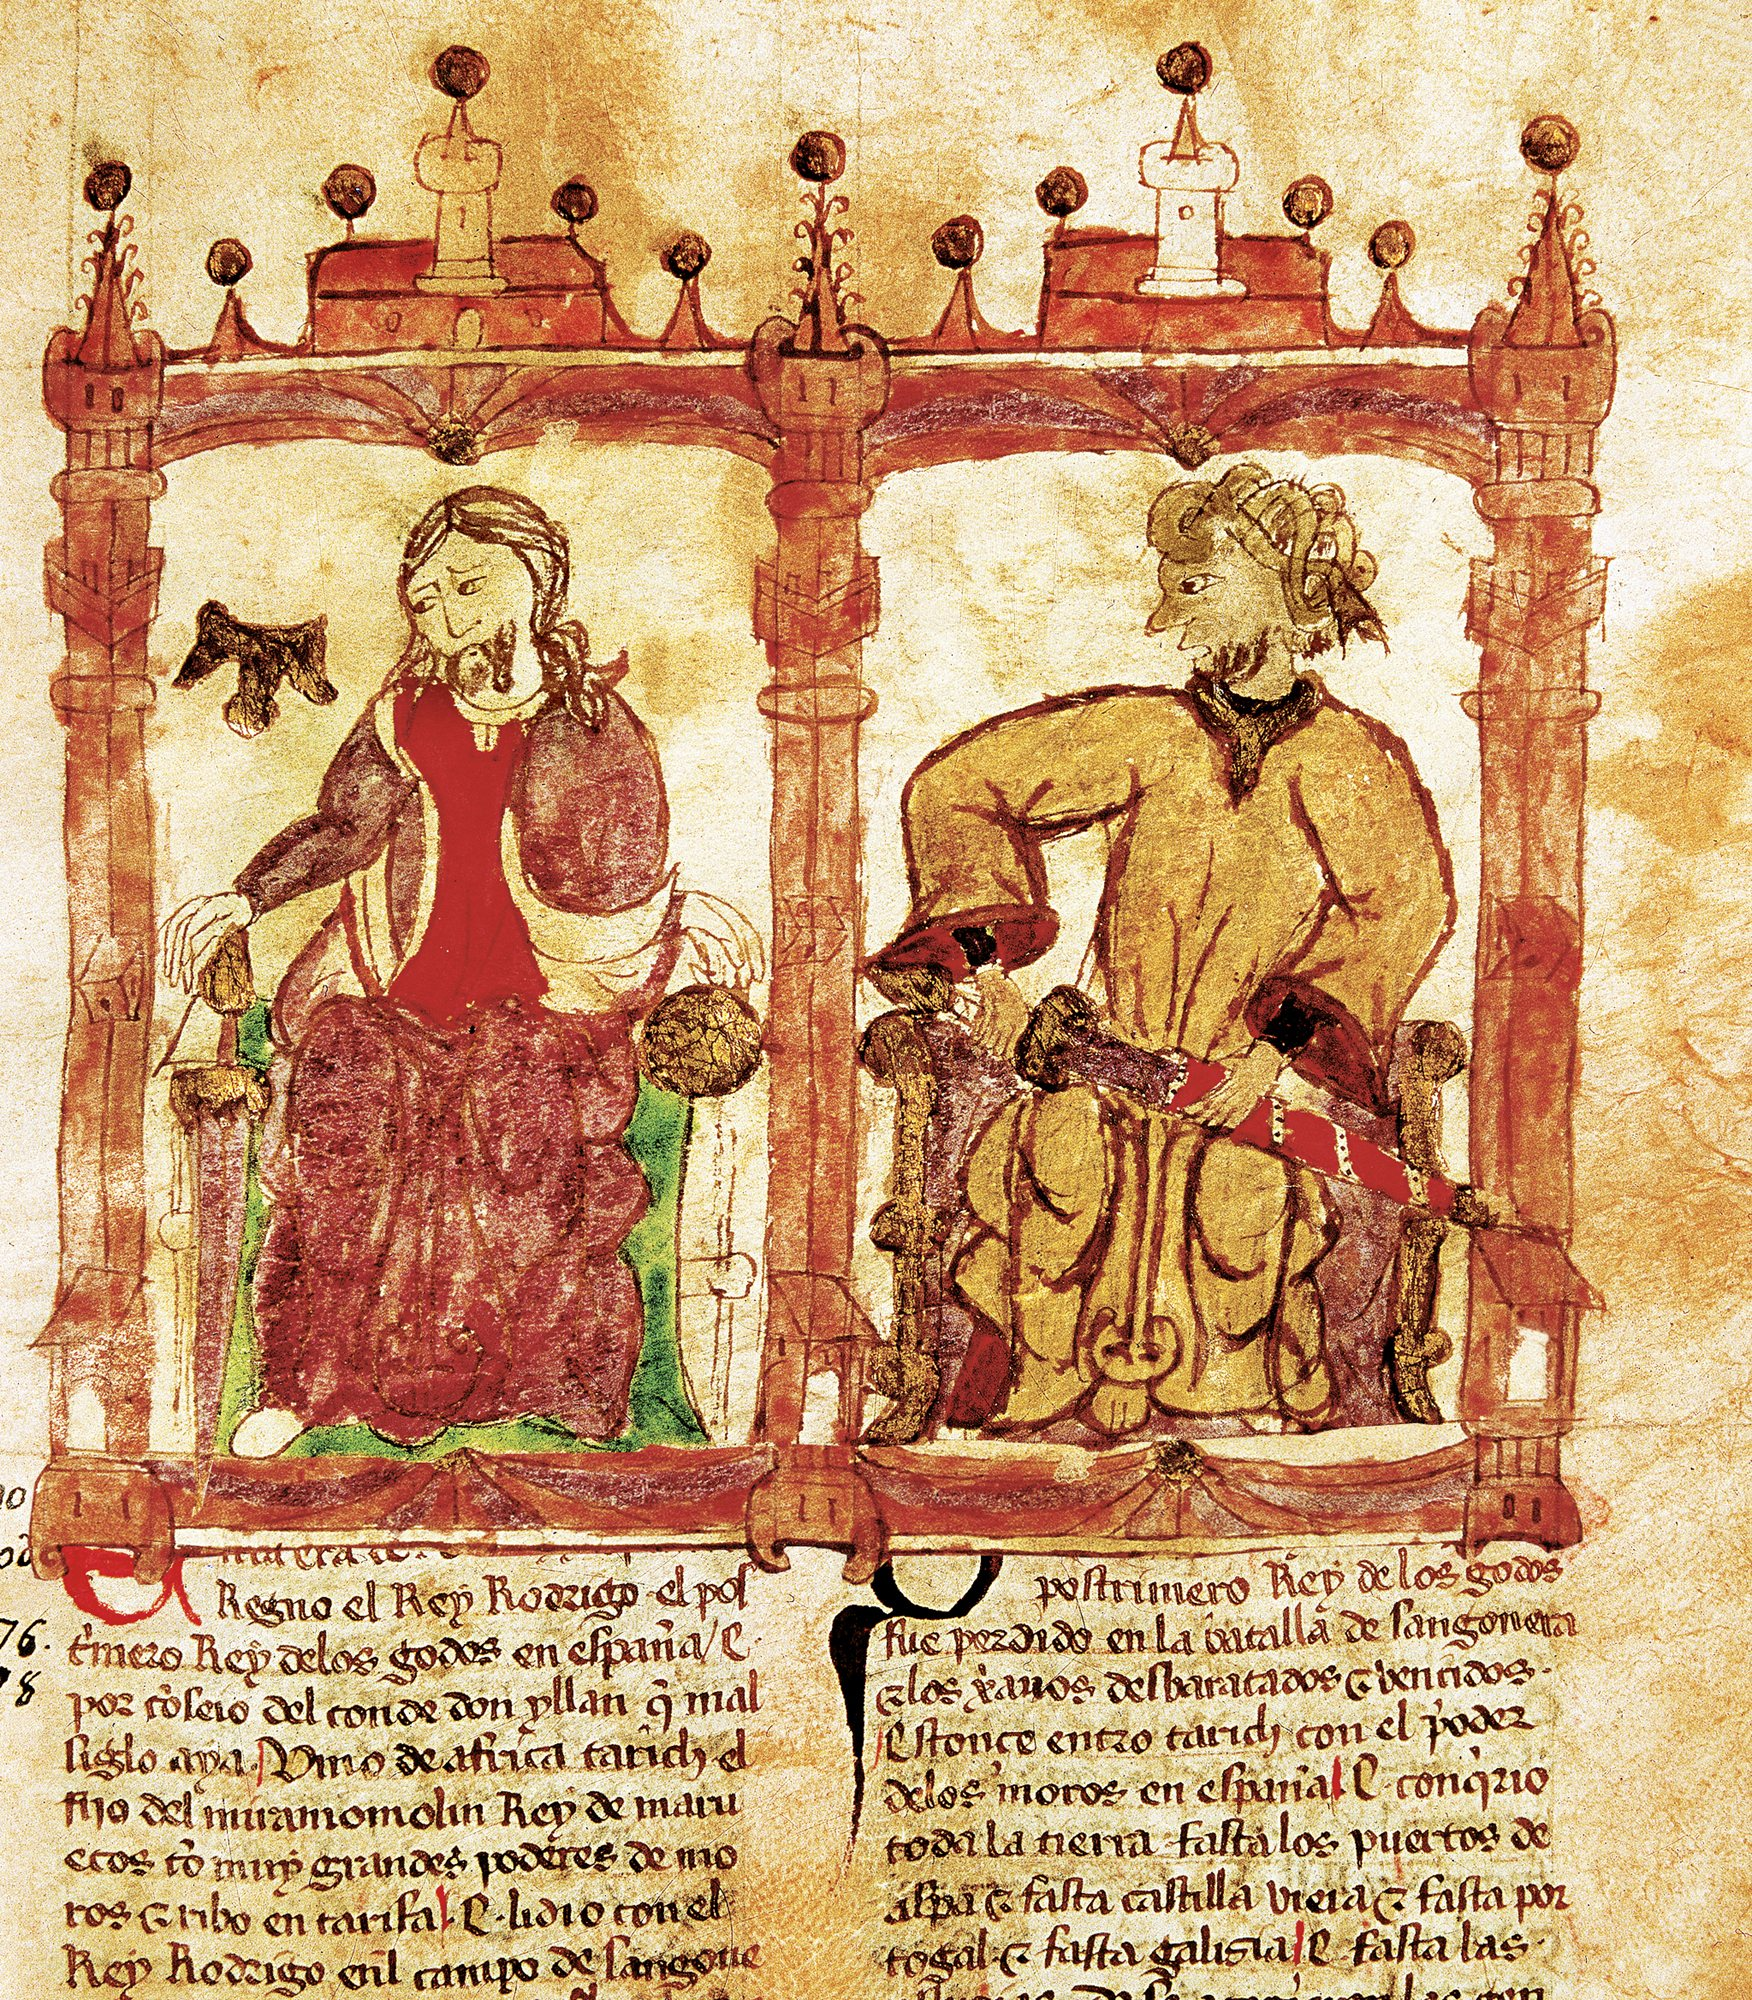 Representació del rei visigot Roderic i del general àrab Tarik (segle XI). Font Biblioteca Nacional de España